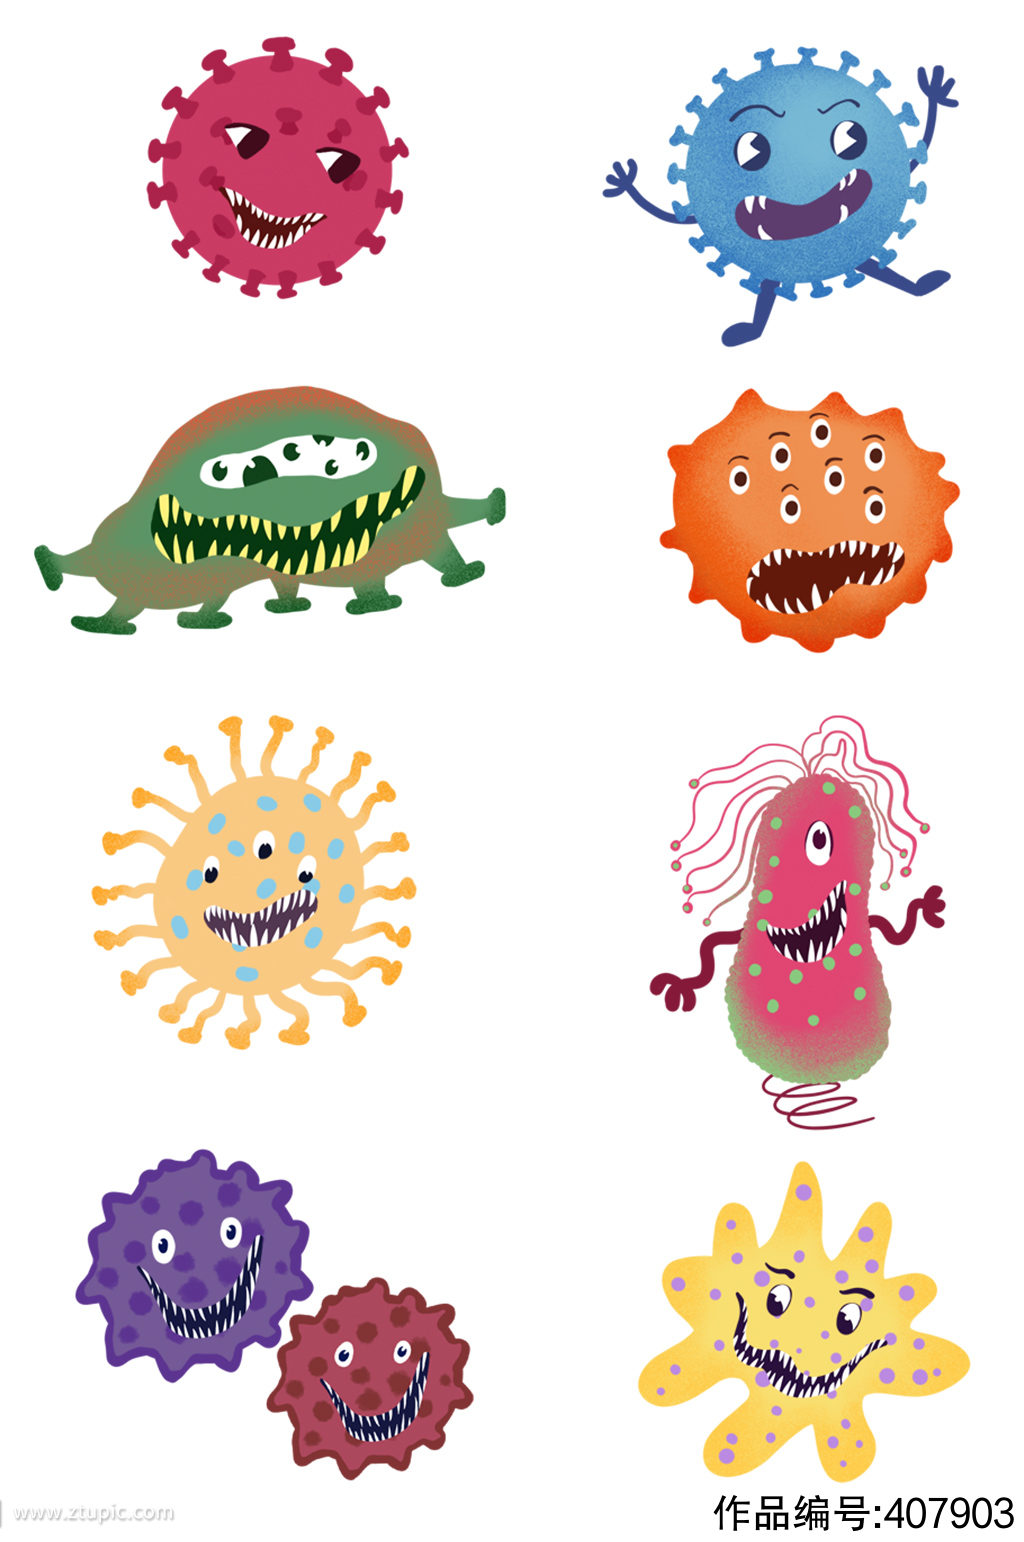 細菌 手繪 卡通 可愛, 外觀, 綠色, 卡通素材圖案，PSD和PNG圖片免費下載